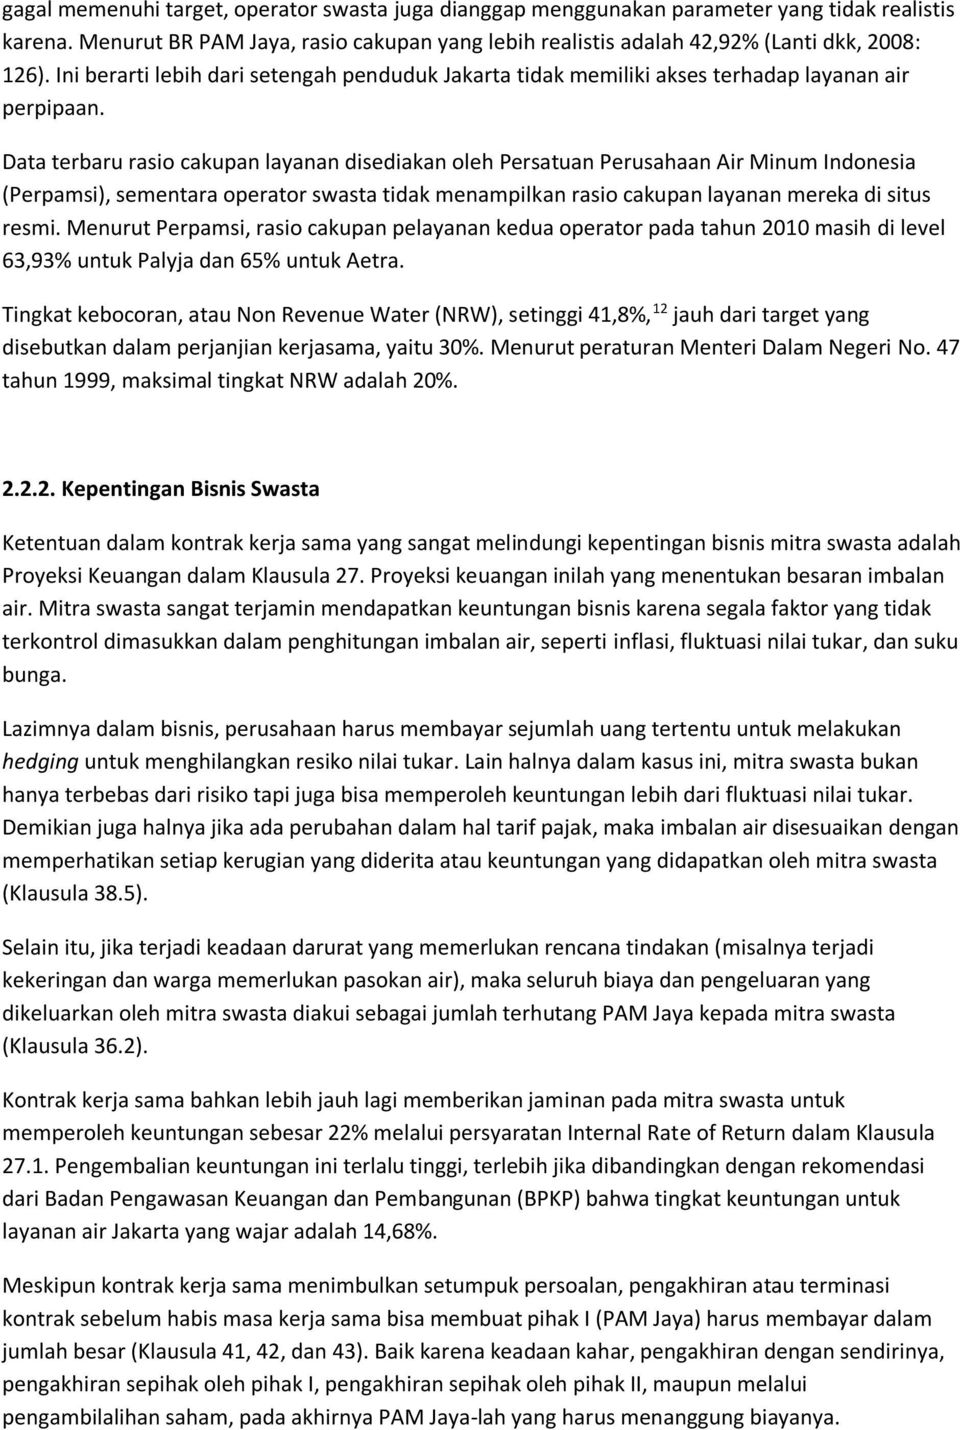 Data terbaru rasio cakupan layanan disediakan oleh Persatuan Perusahaan Air Minum Indonesia (Perpamsi), sementara operator swasta tidak menampilkan rasio cakupan layanan mereka di situs resmi.